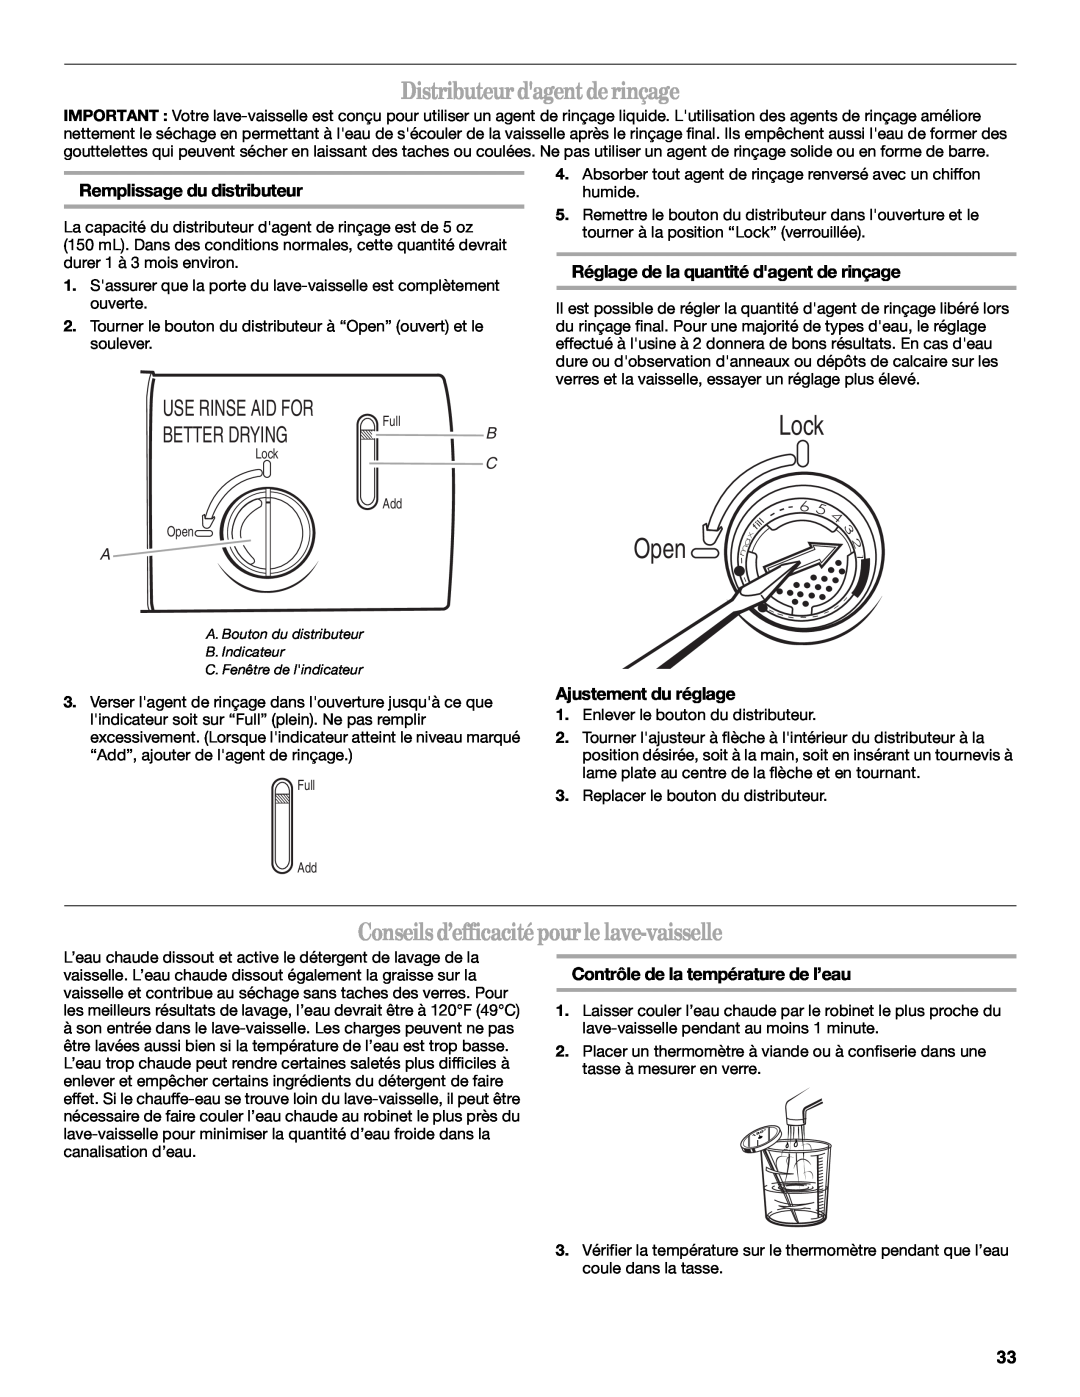 Whirlpool DU1201 Distributeurdagentderinçage, Conseilsd’efficacitépourle lave-vaisselle, Ajustement du réglage, Lock, Open 